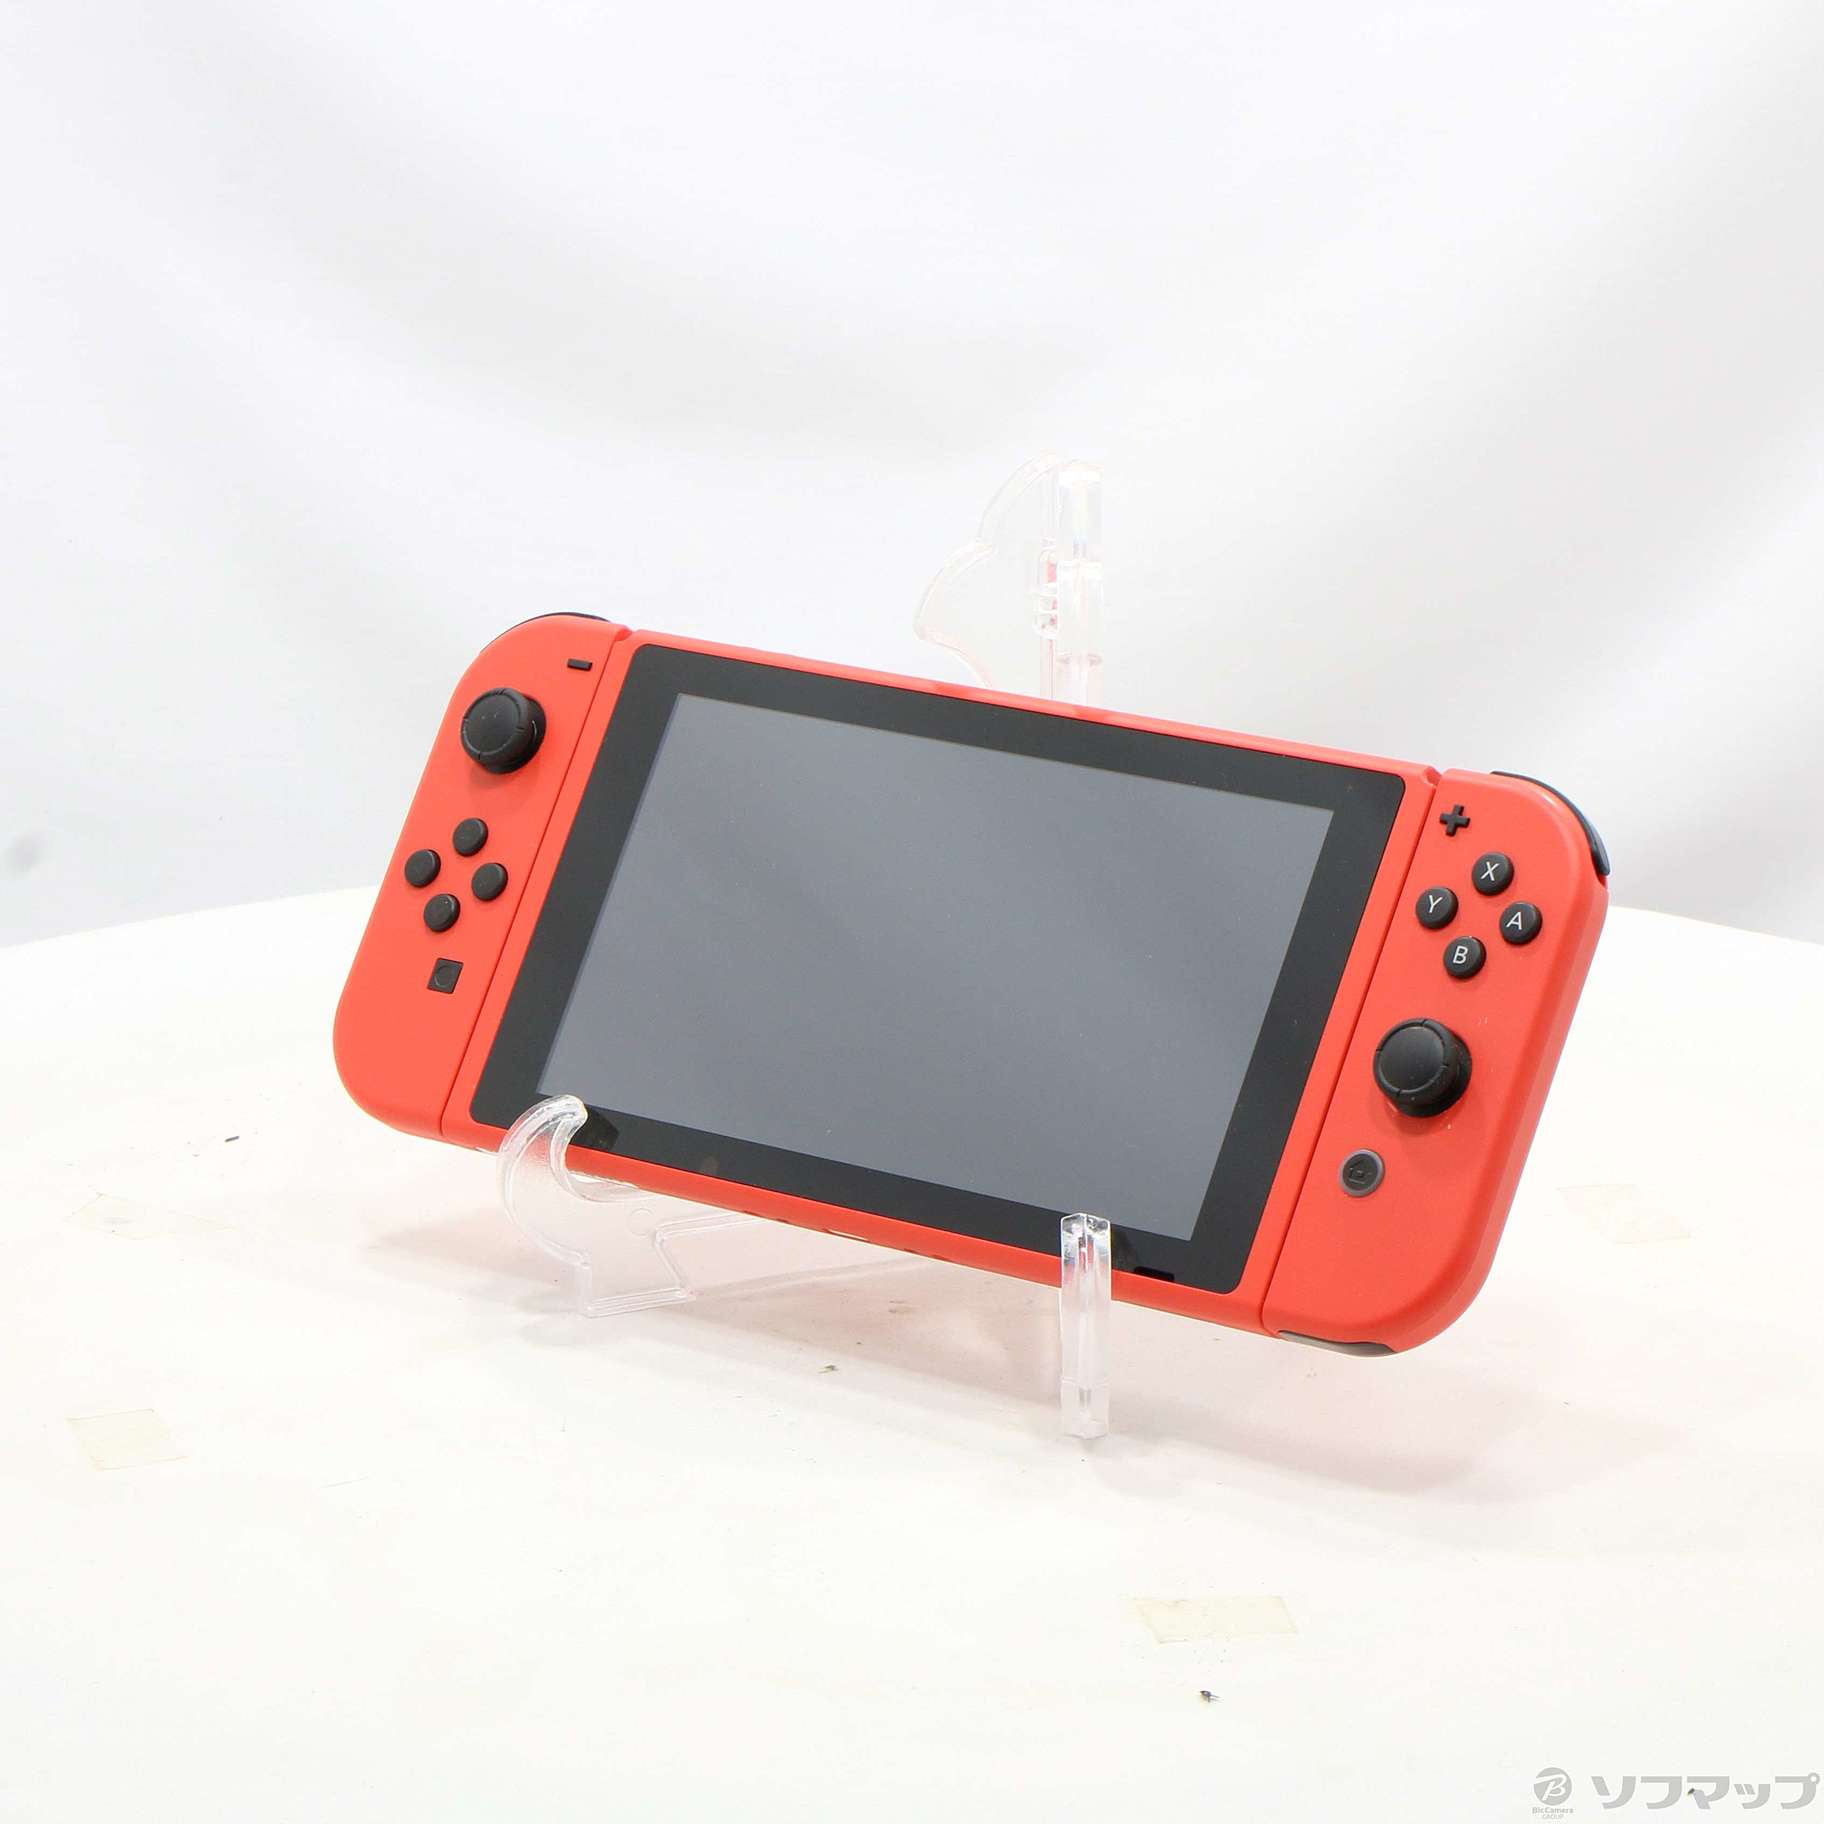 美品 Nintendo Switch マリオレッド×ブルー セット ニンテンドー